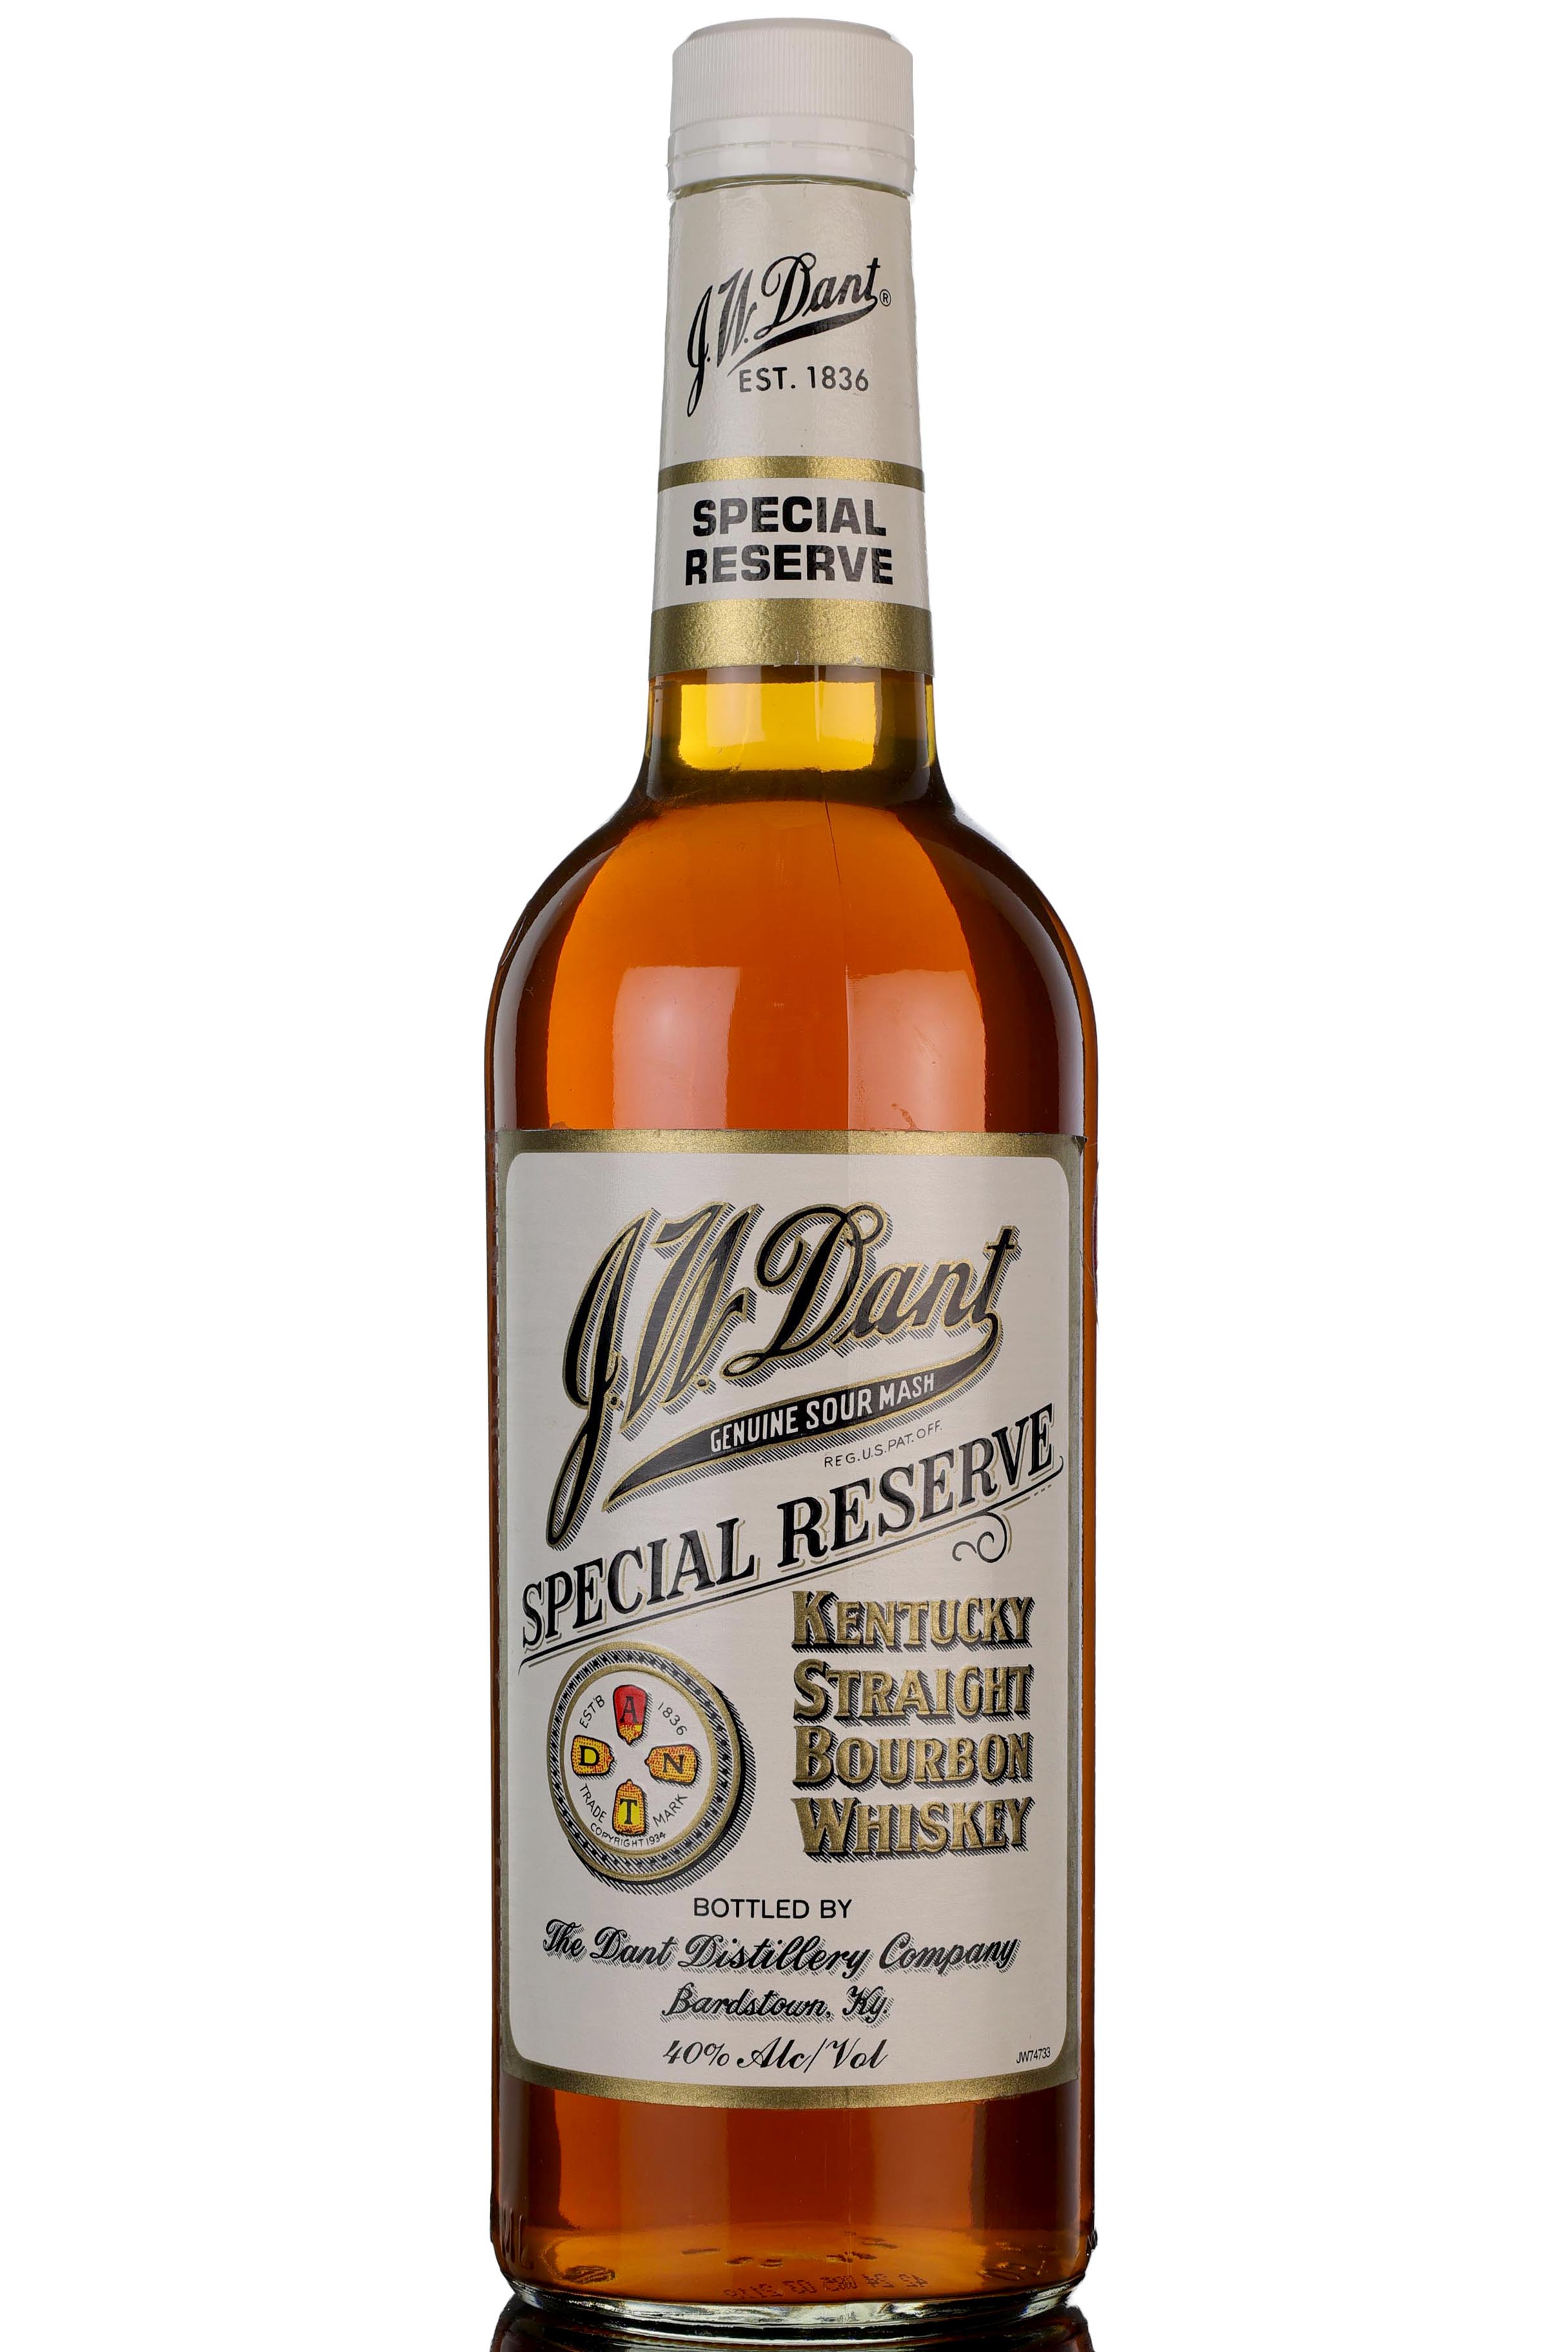 J W Dant Special Reserve Bourbon